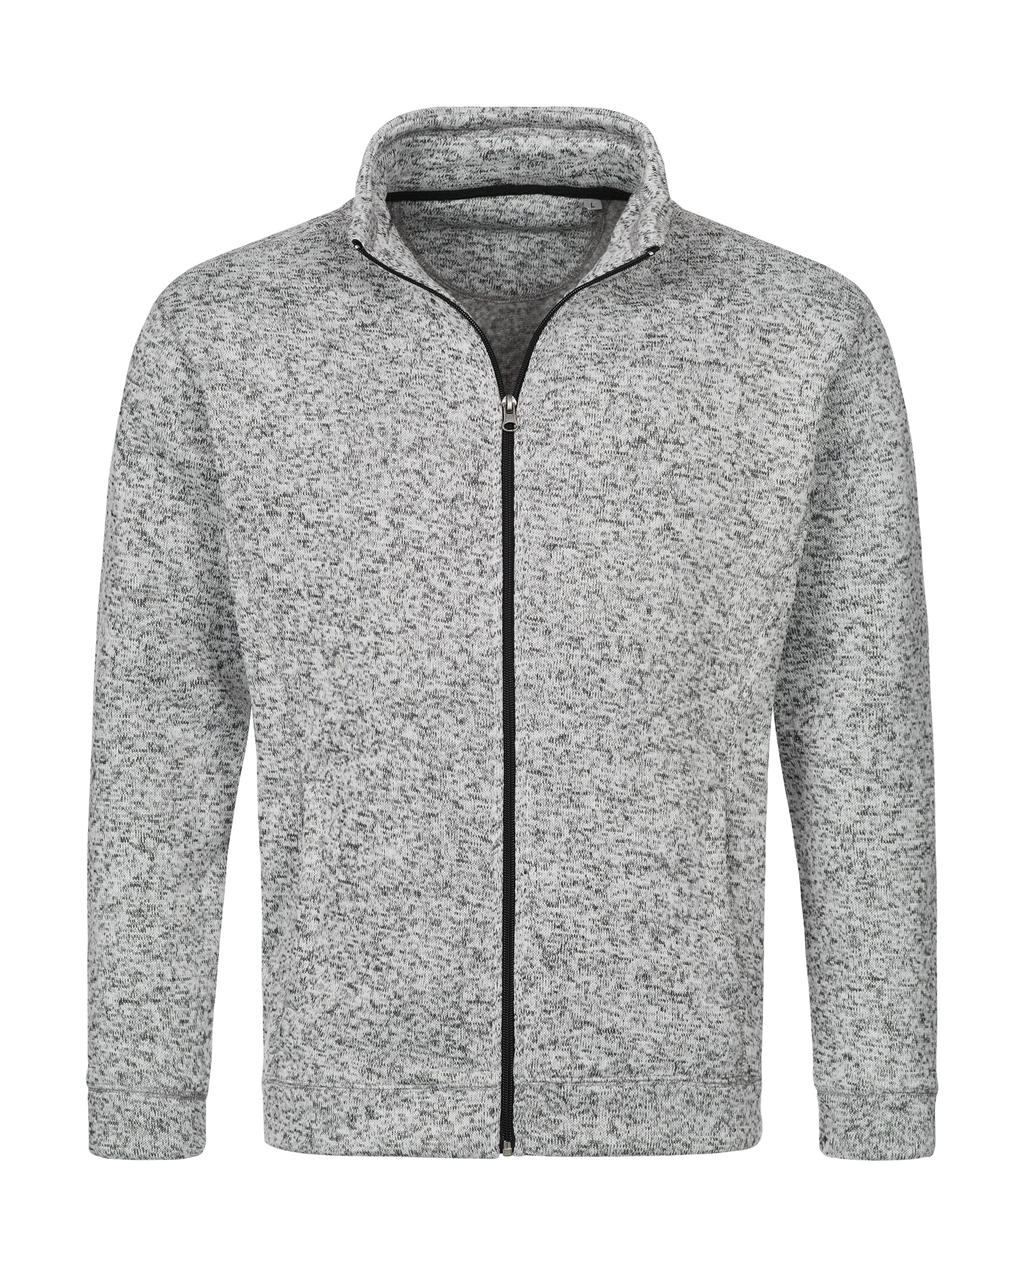 Knit Fleece Jacket zum Besticken und Bedrucken in der Farbe Light Grey Melange mit Ihren Logo, Schriftzug oder Motiv.